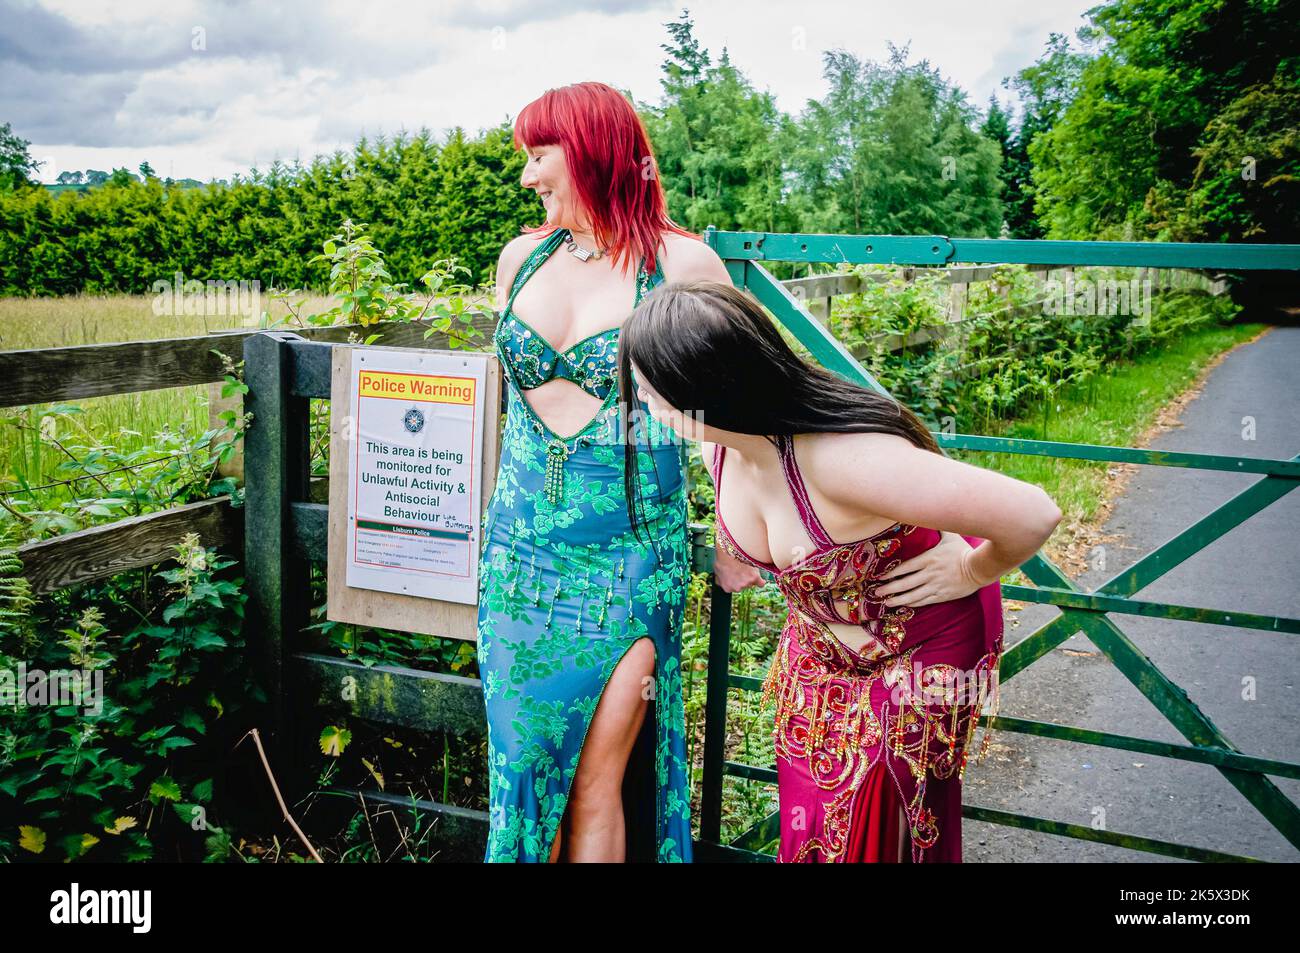 Zwei Bauchtänzerinnen, die ein Kostümkostüm tragen, untersuchen ein Warnschild vor antisozialen Aktivitäten in einem ländlichen Gebiet. Stockfoto